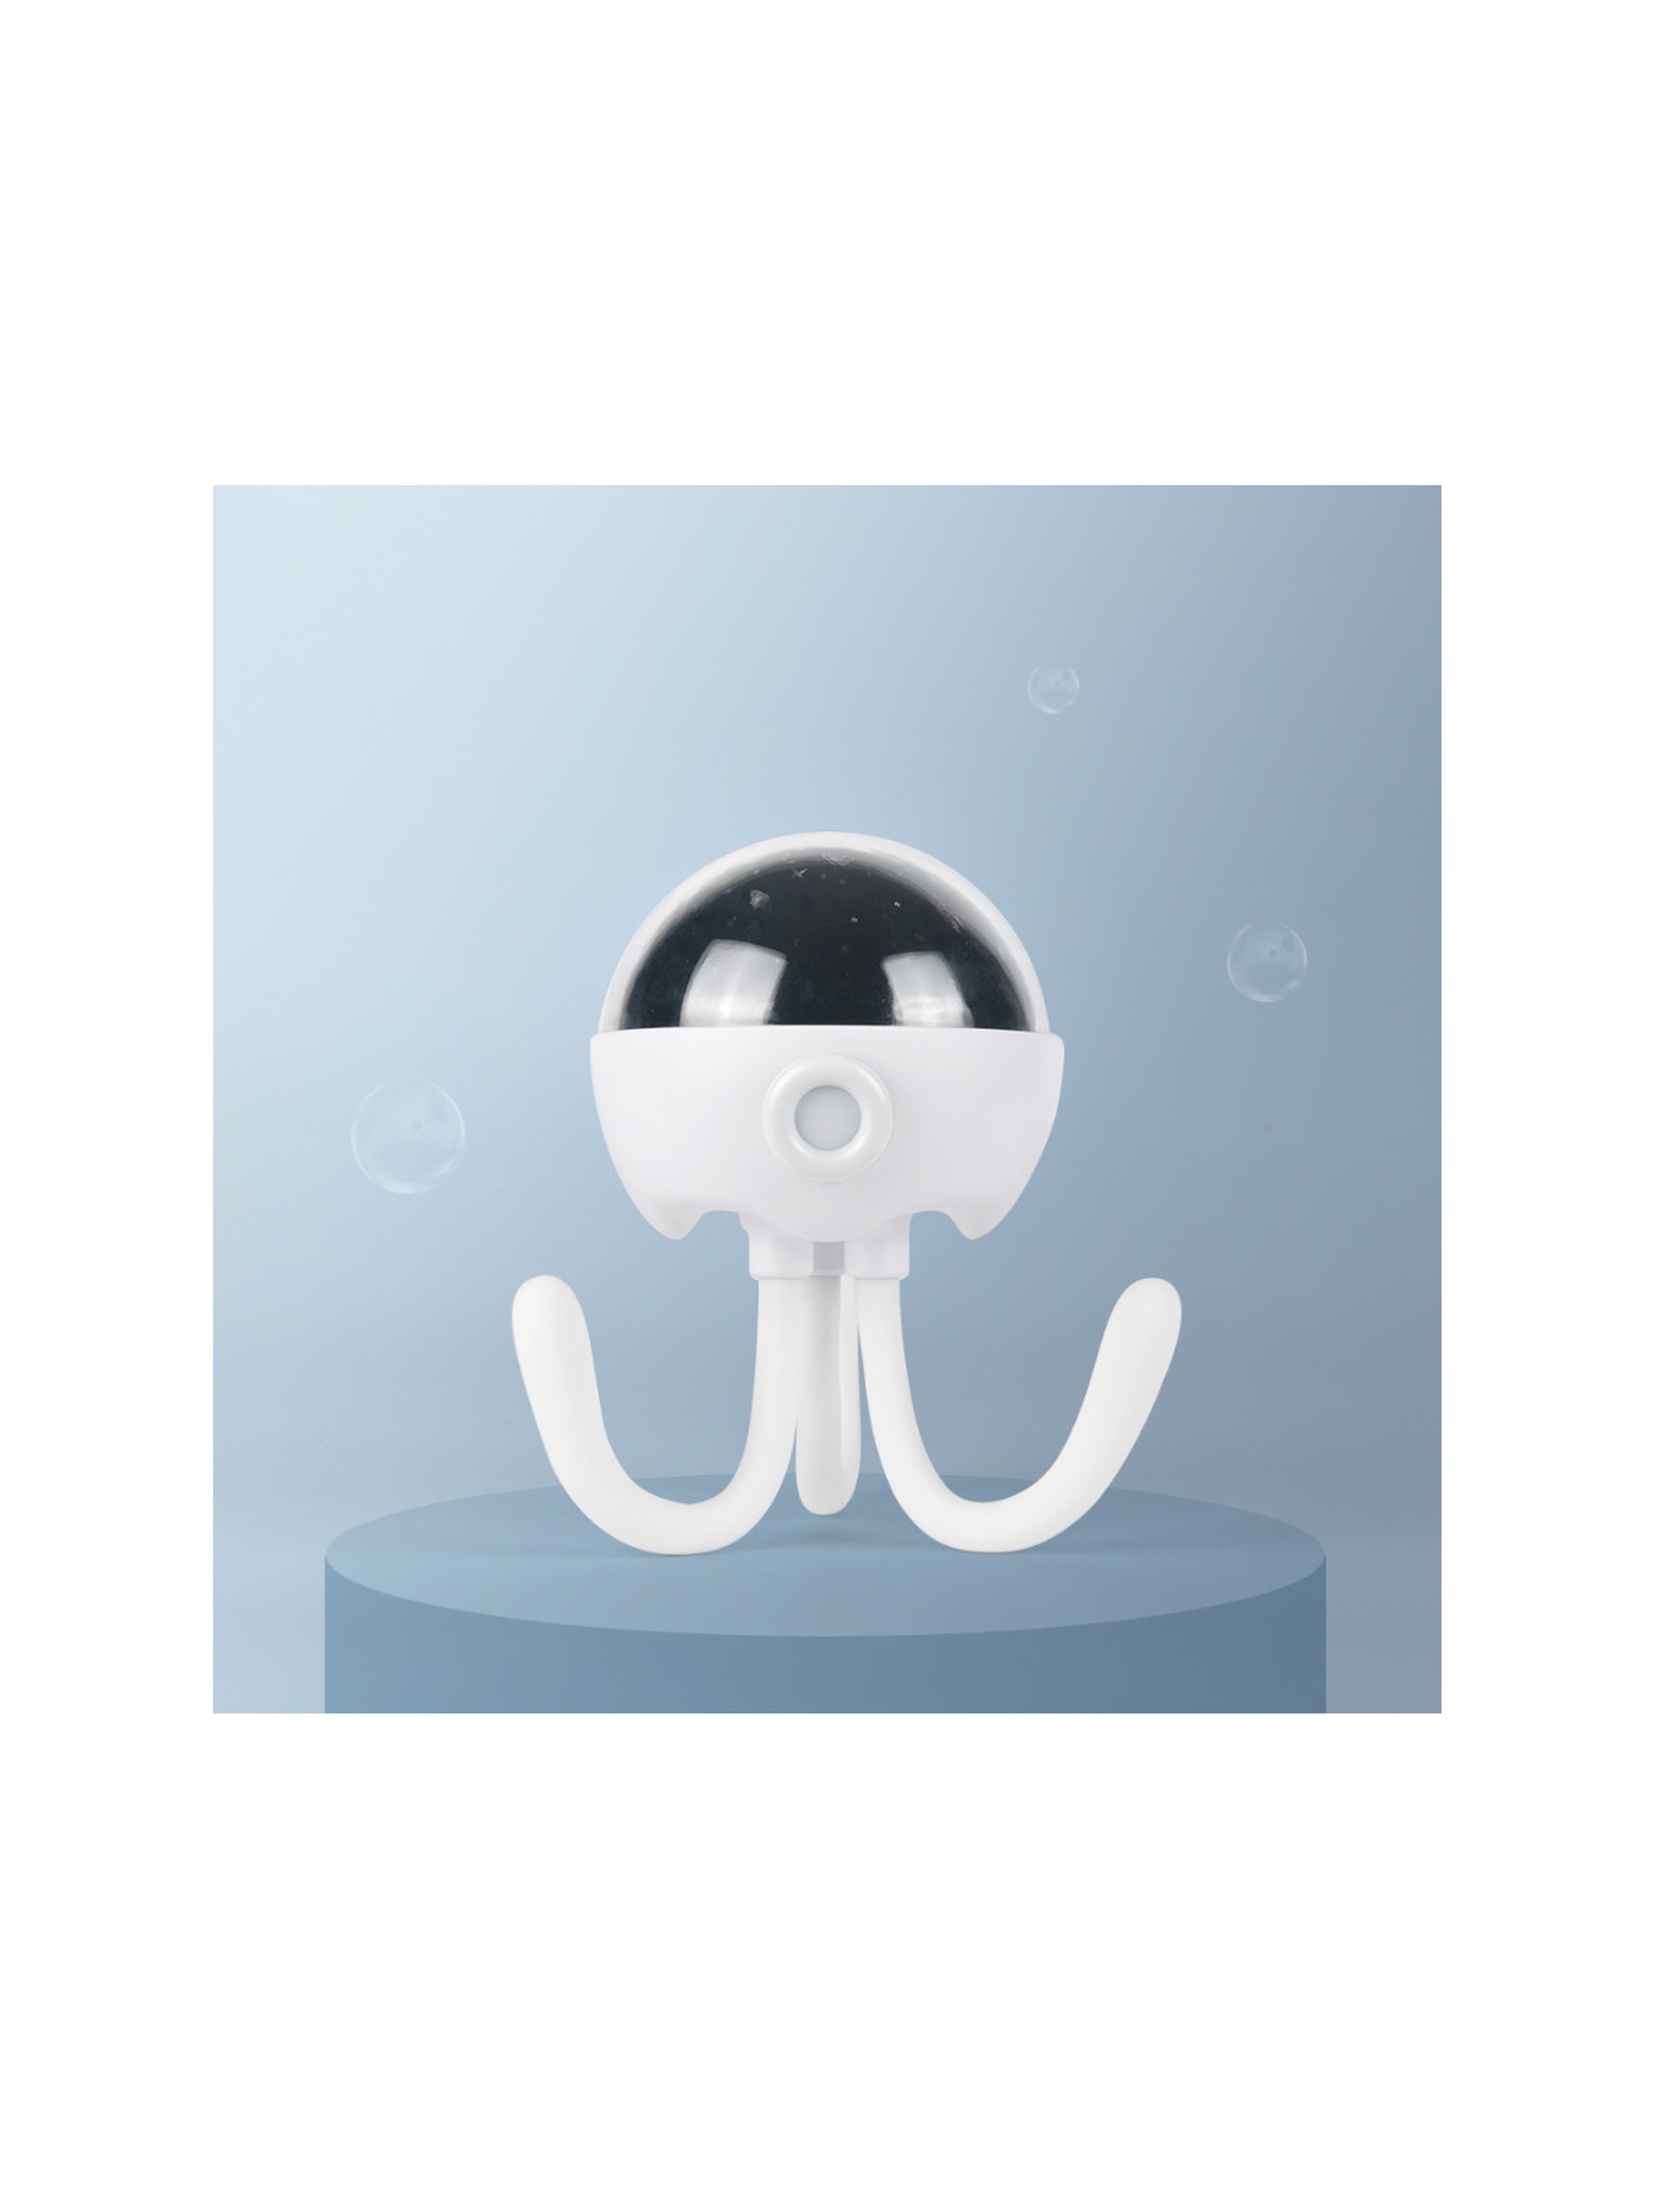 GIOstar Lampka Octopus Projektor dla dzieci